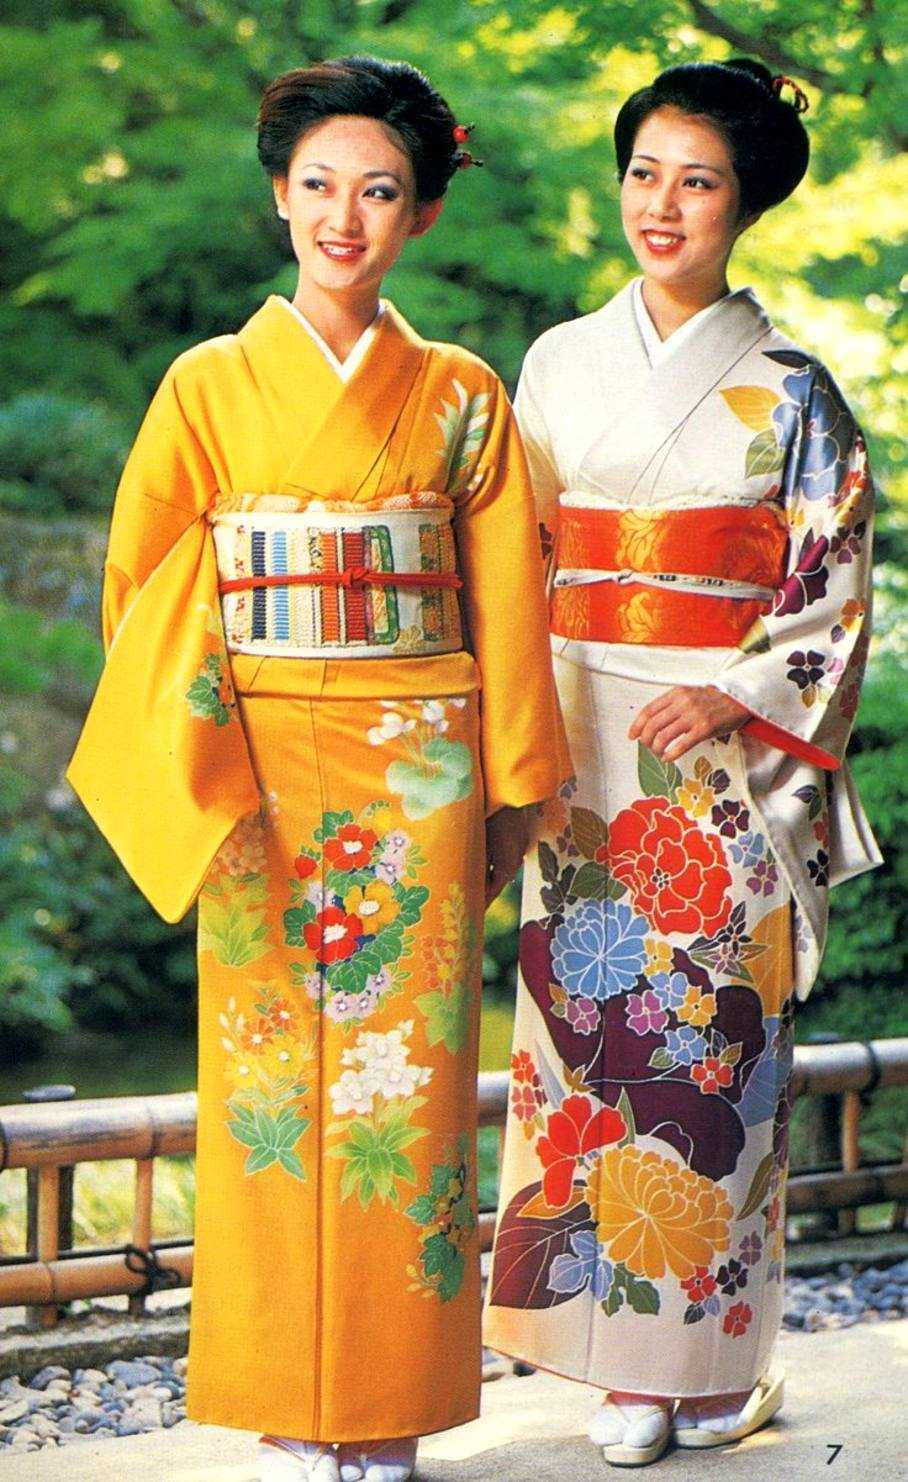 Платья-кимоно Платья-кимоно - это самый распространенный фасон платьев в японском стиле Они шьются на подобие халатов с запахом и дополняются поясом